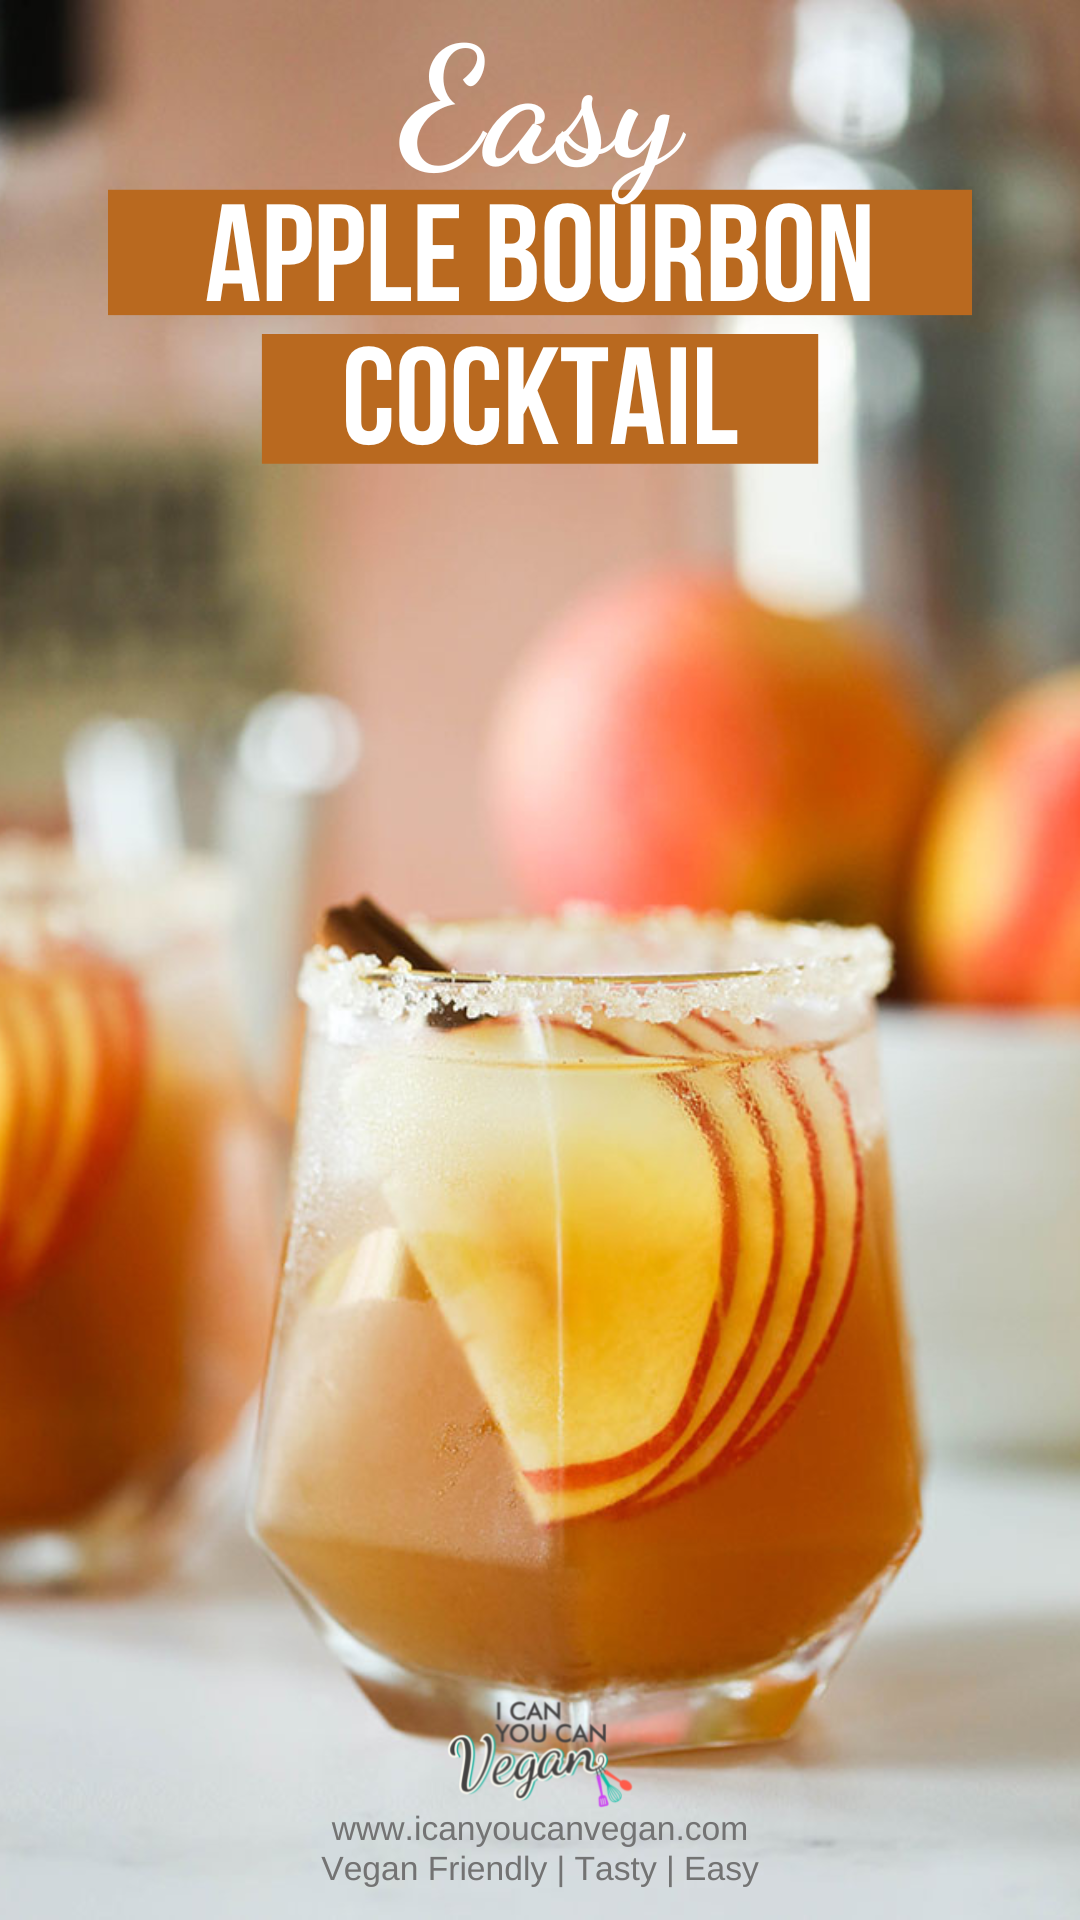 Apple Bourbon Cocktail
